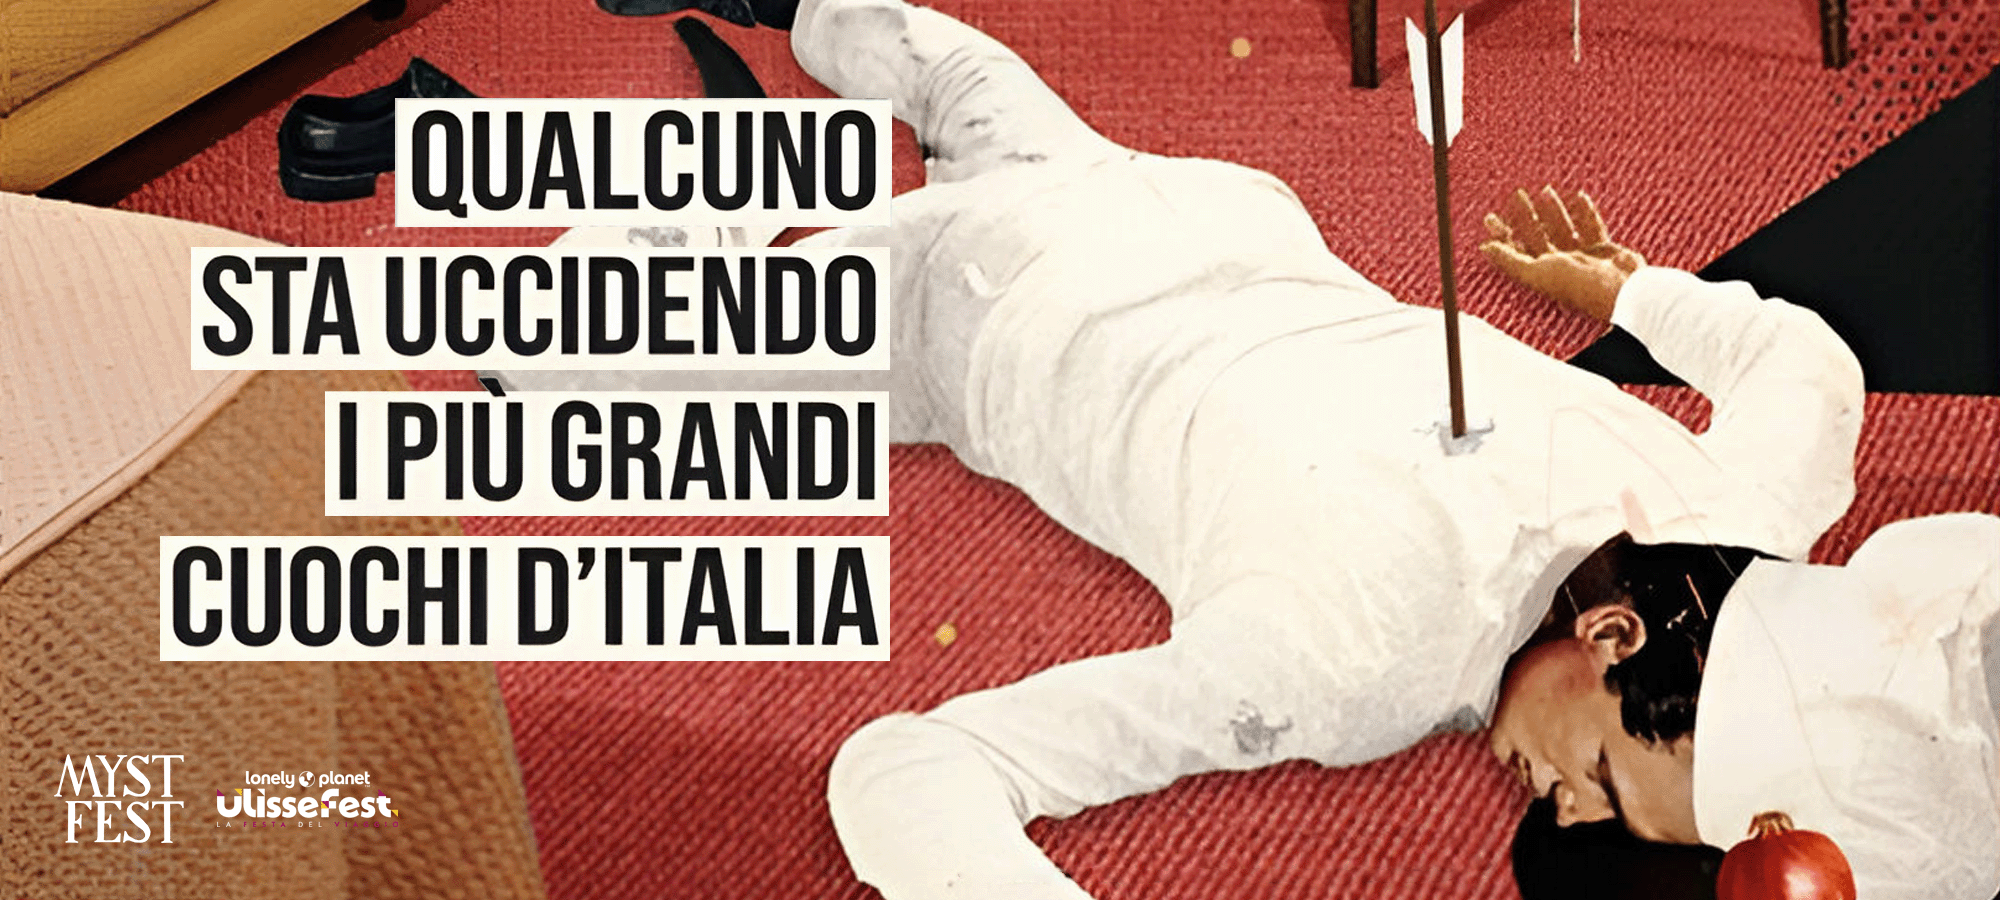 Qualcuno sta uccidendo i più grandi chuochi d'Italia